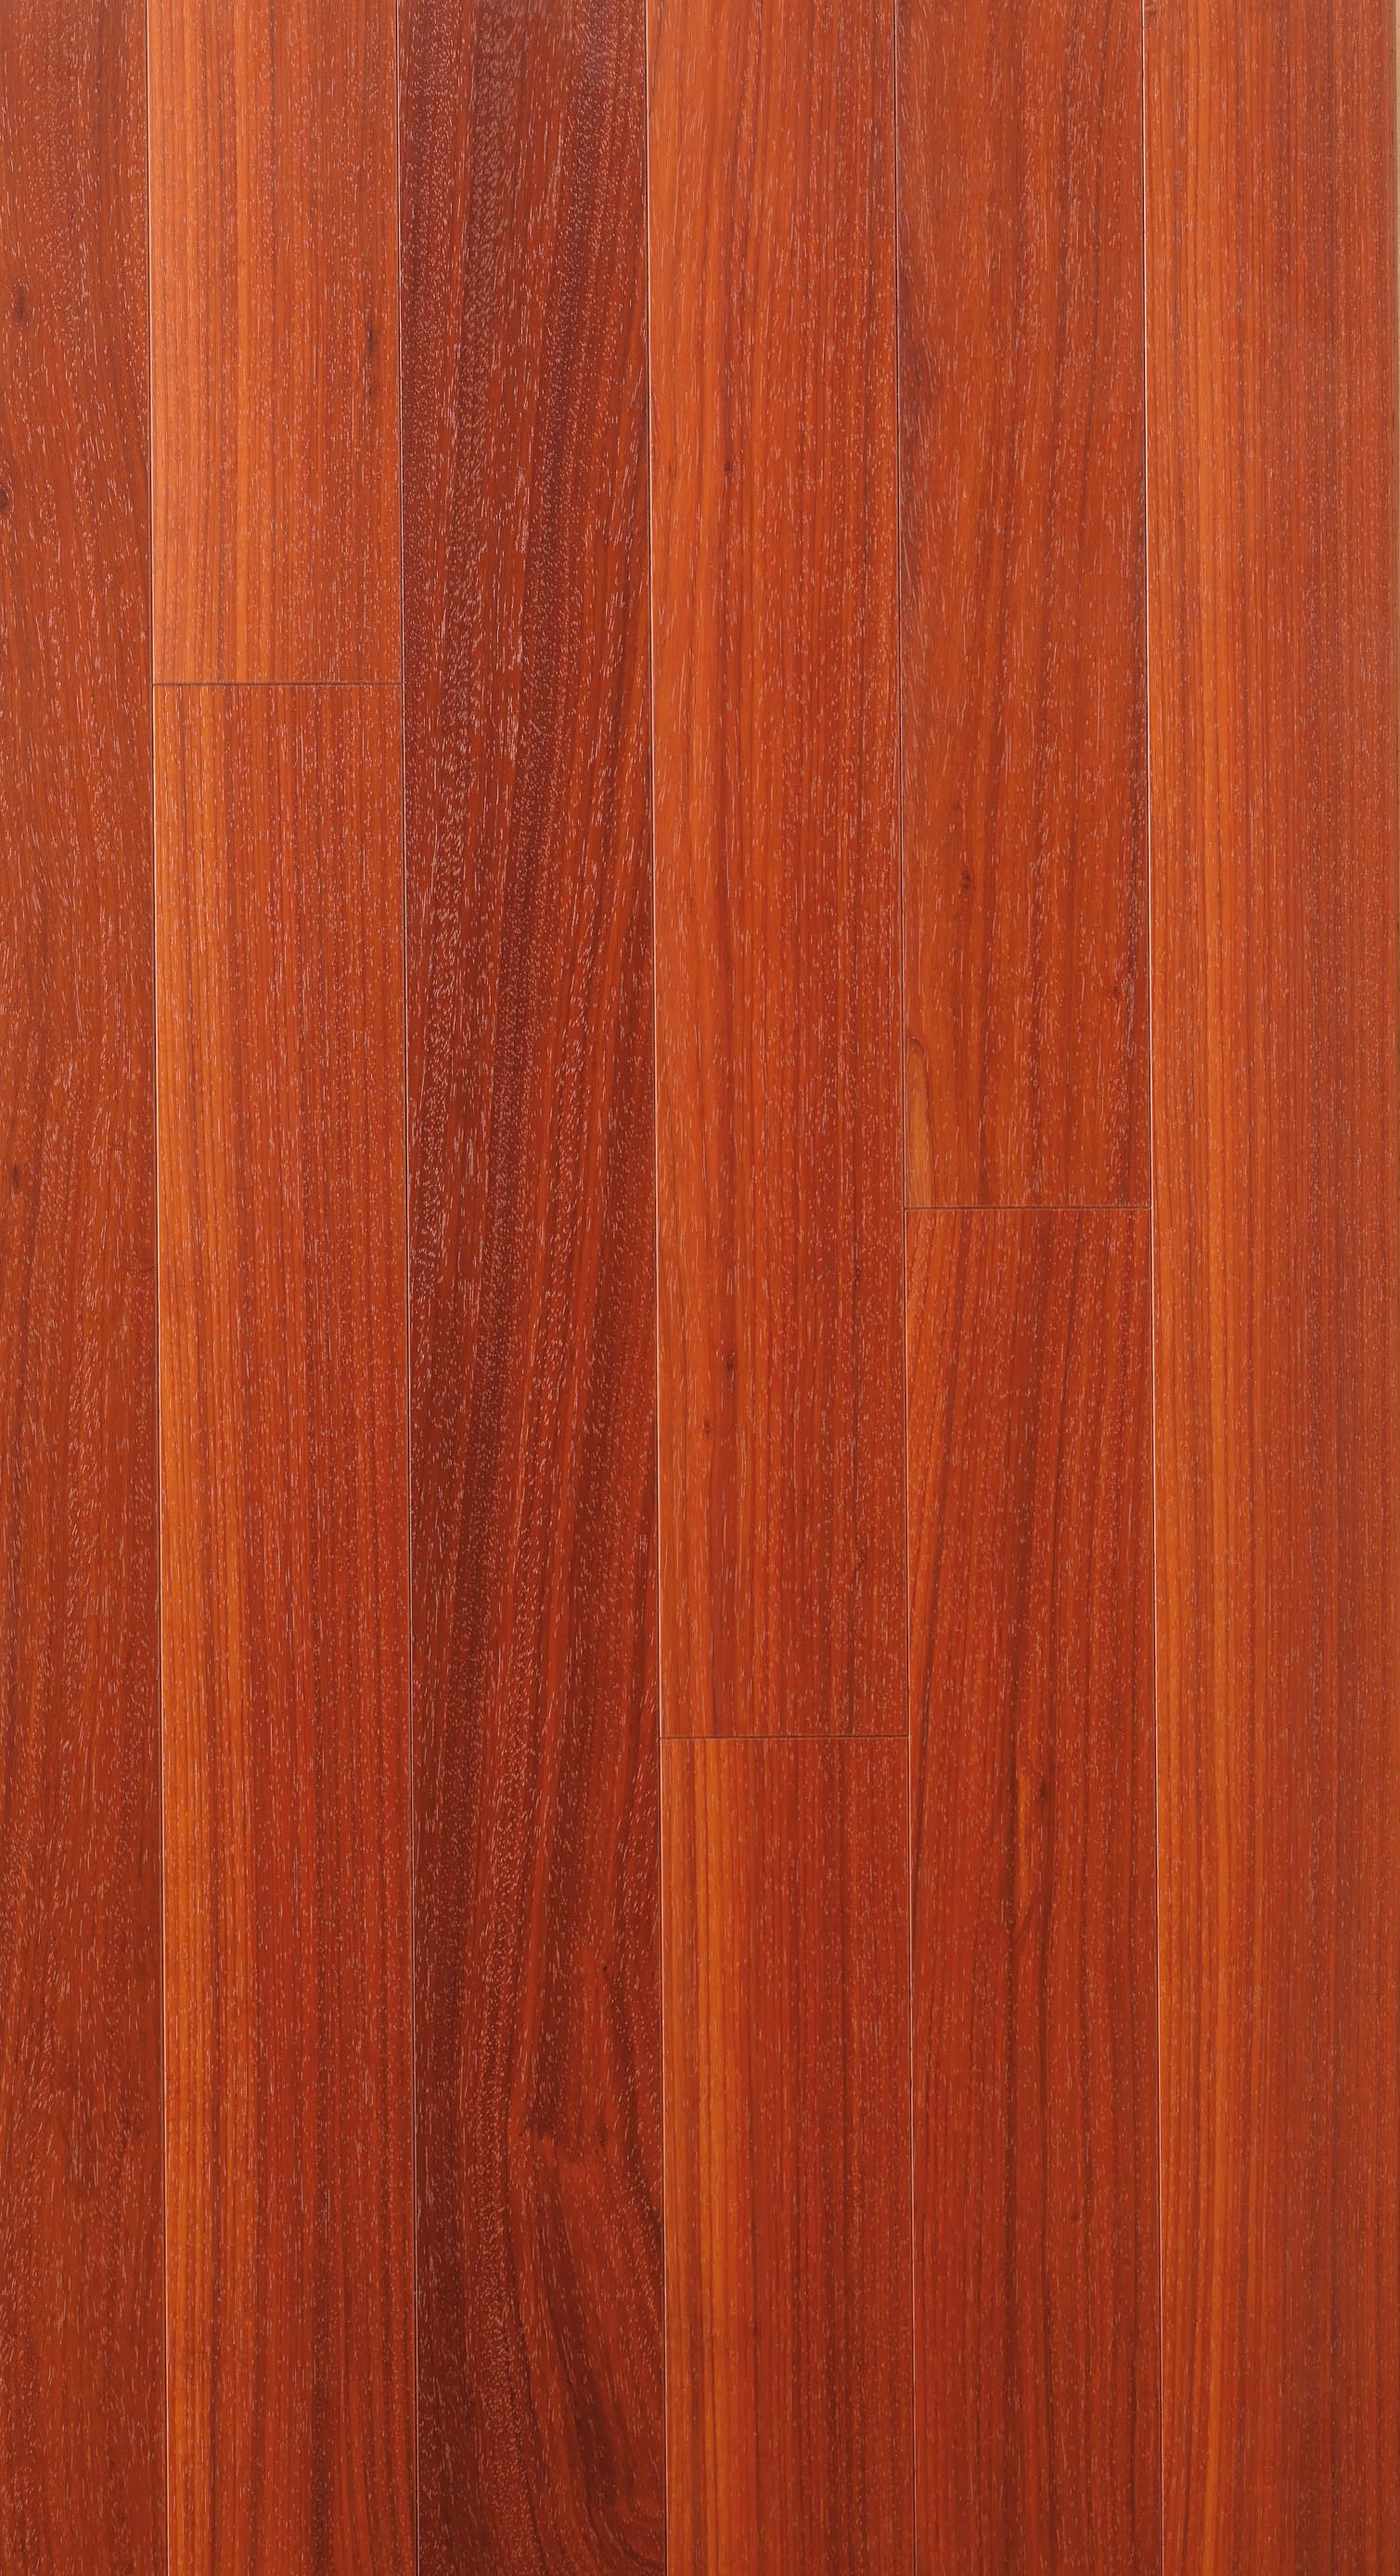 非洲红紫檀木- 地板- 进口地板|环保地板|健康地板|高端品牌地板-百玛家居